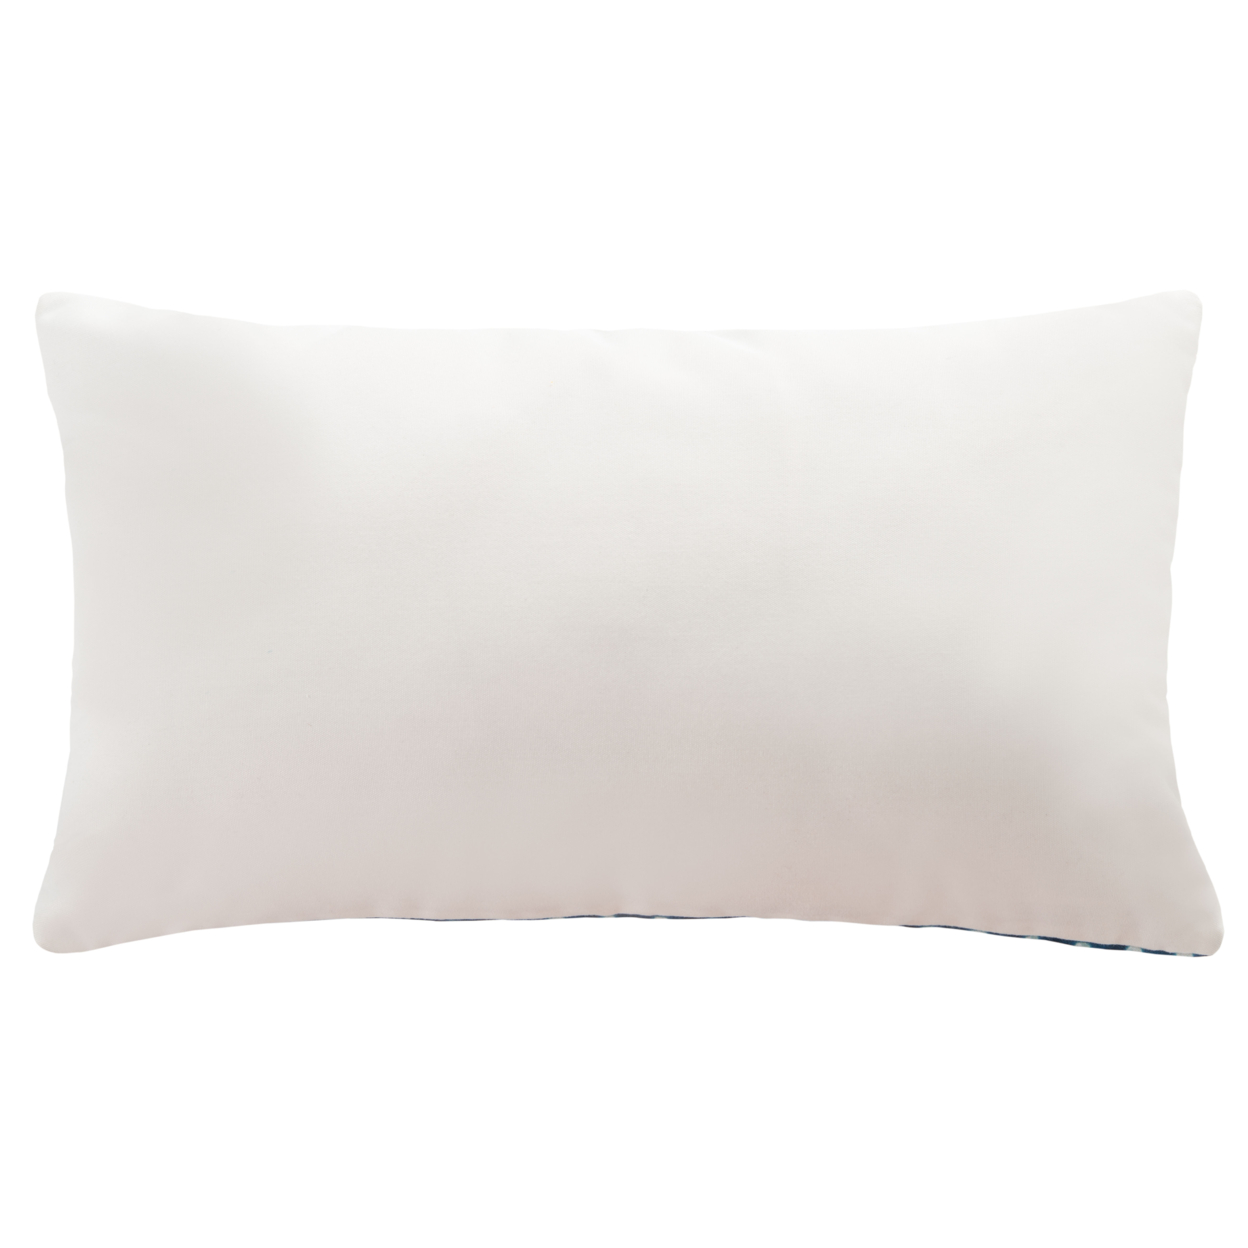 SAFAVIEH Londynne Indoor / Outdoor Pillow Blue / White